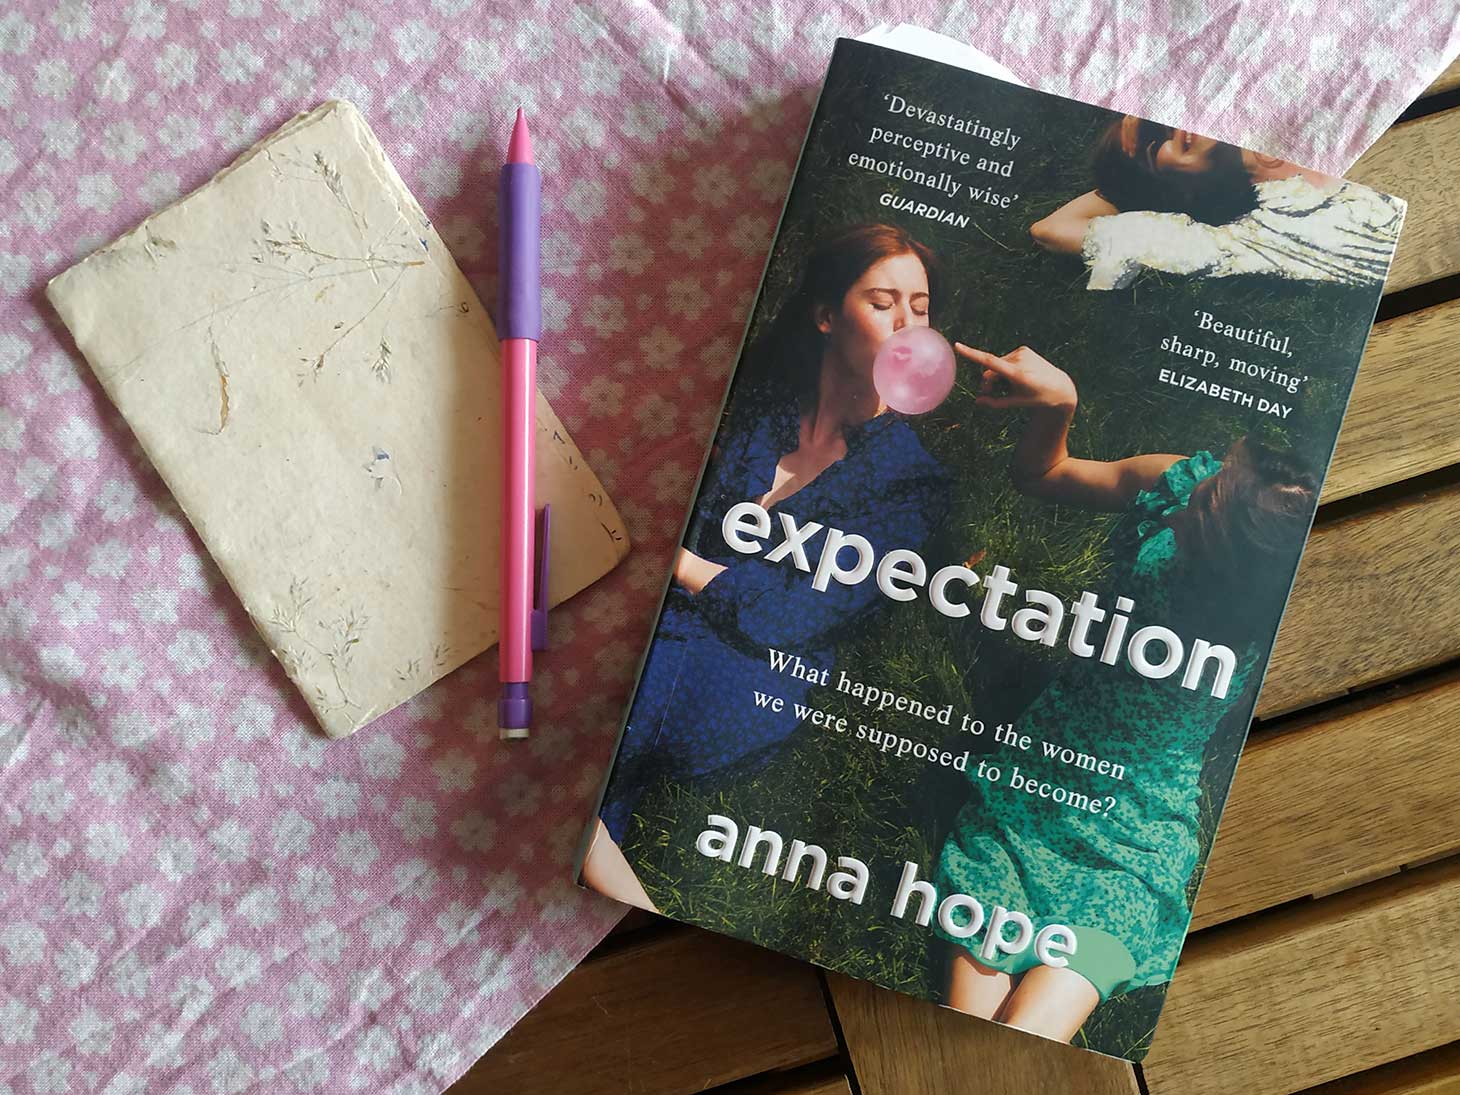 Mon avis sur le livre "Nos Espérances" d'Anna Hope ("Expectation")